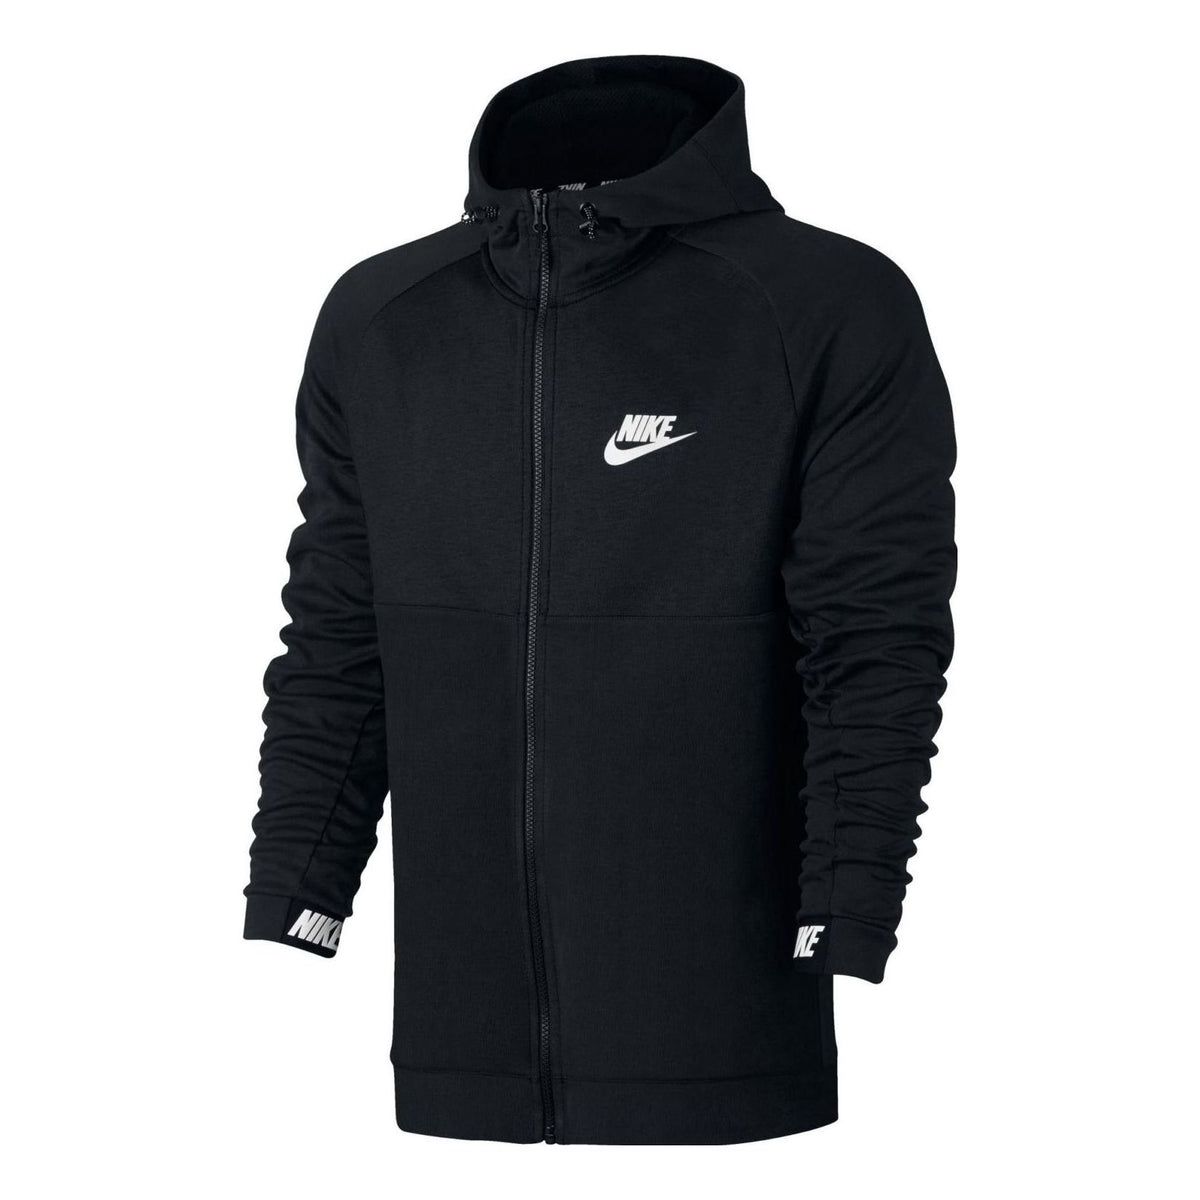 Nike AV15 Hooded Fleece Jacket 'Black' 861742-010 - KICKS CREW